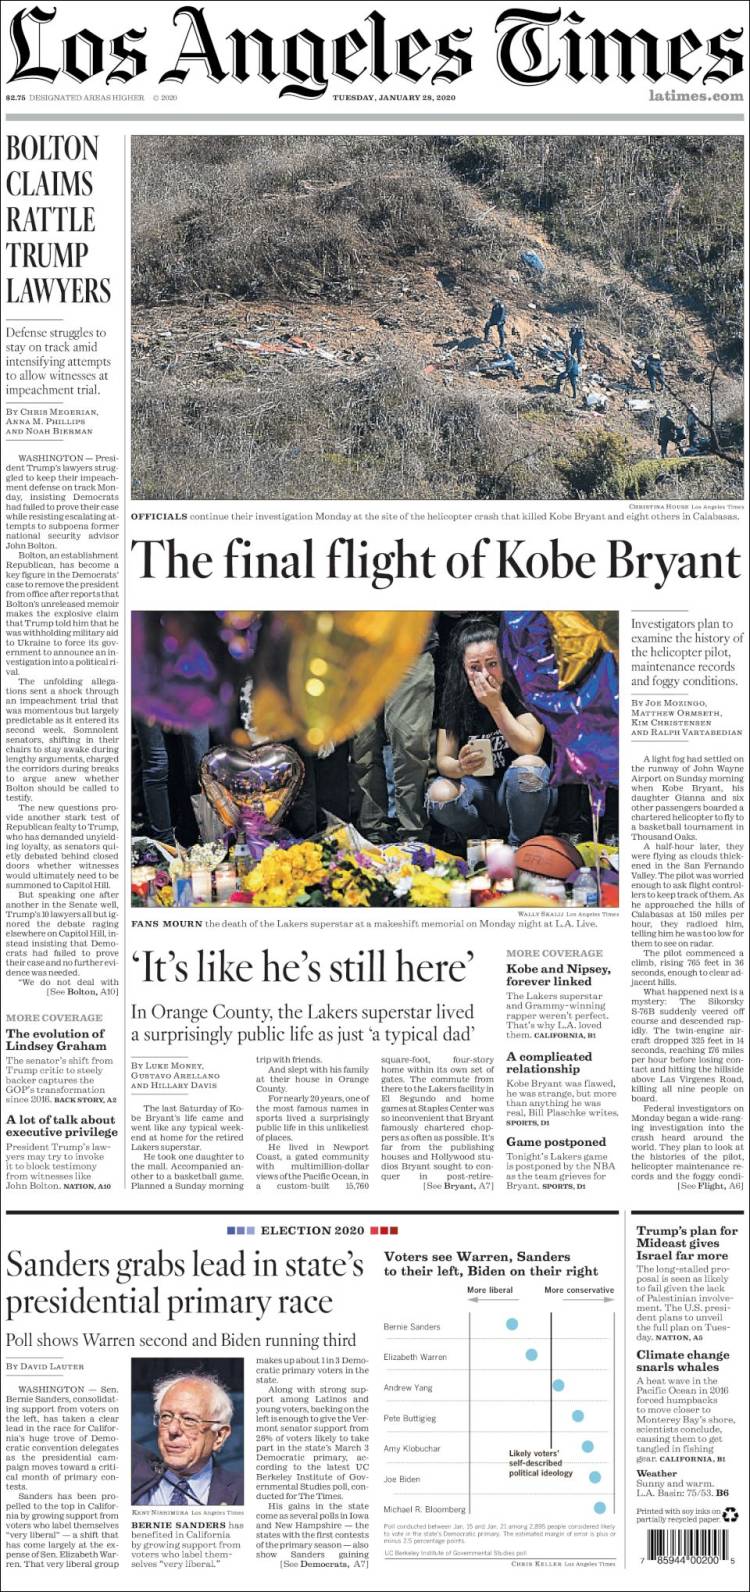 صفحه اول روزنامه لس آنجلس تایمز/ آخرین پرواز کوبی برایانت